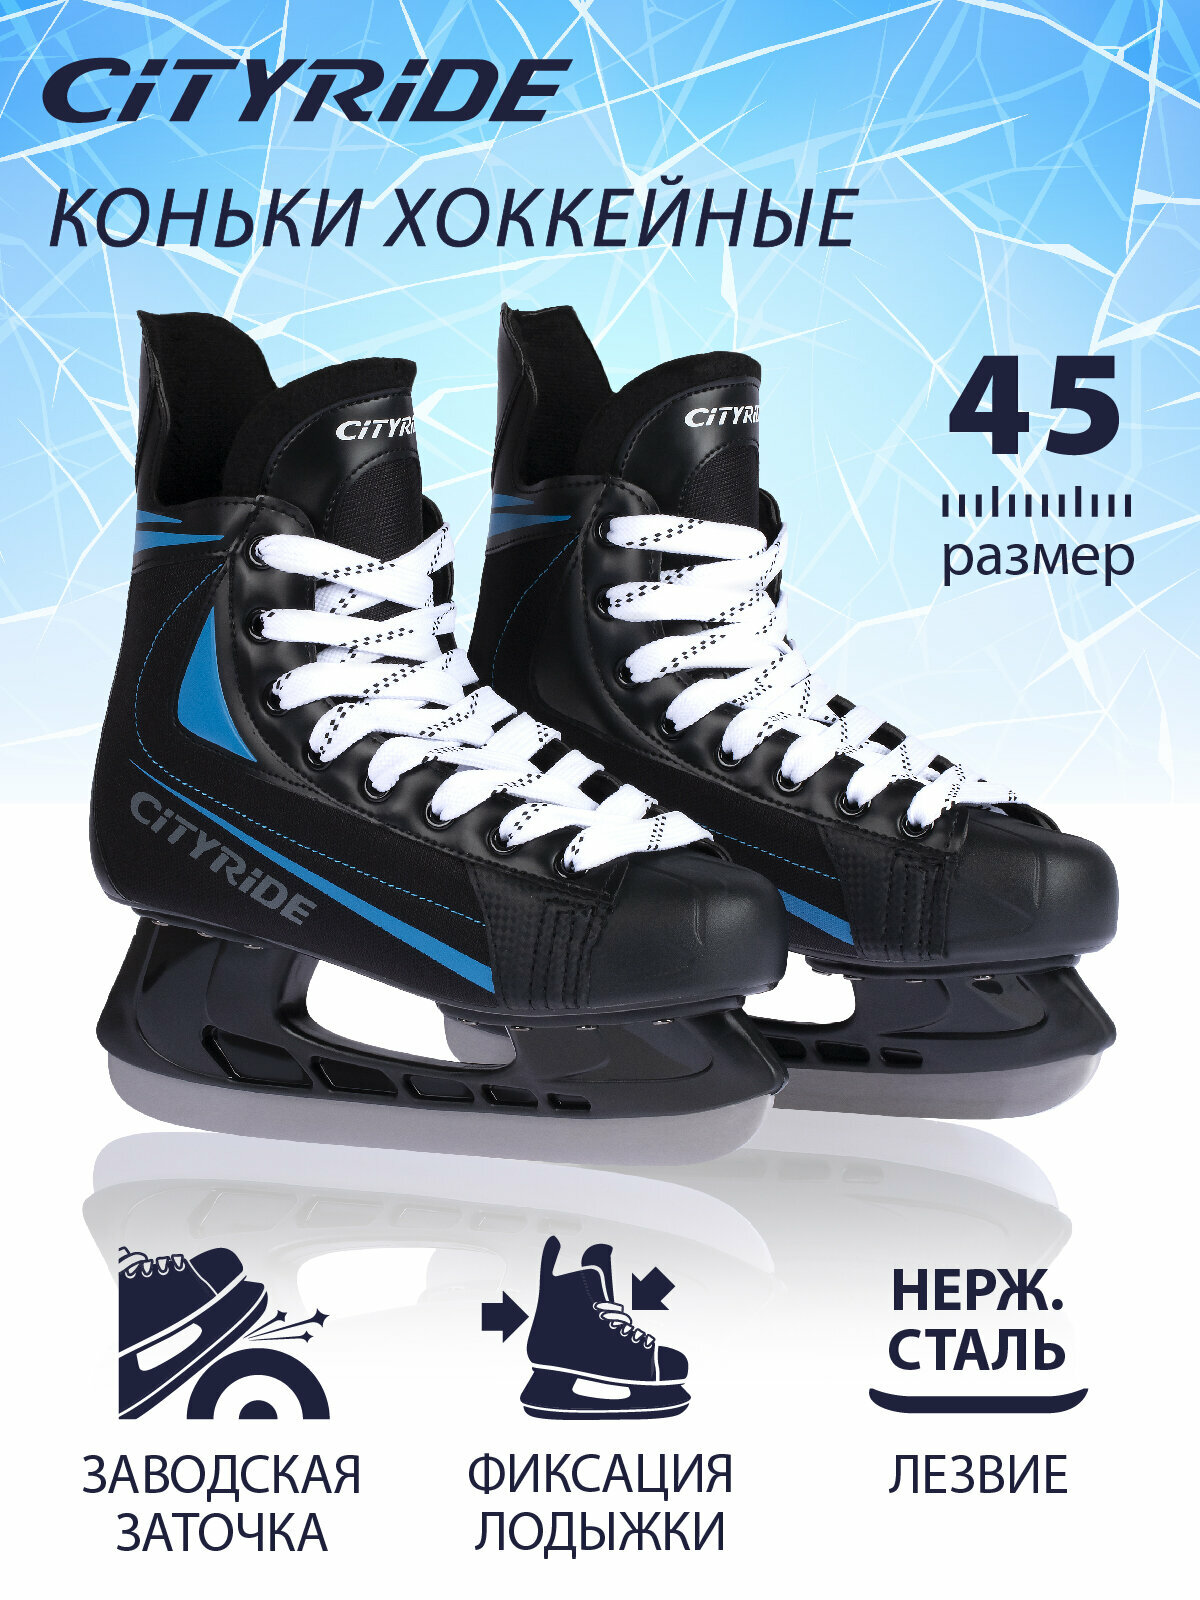 Хоккейные коньки ТМ City-Ride, лезвия нержавеющая сталь/заводская заточка, ботинки нейлон/ПВХ, чёрный/синий, 46(RUS45)